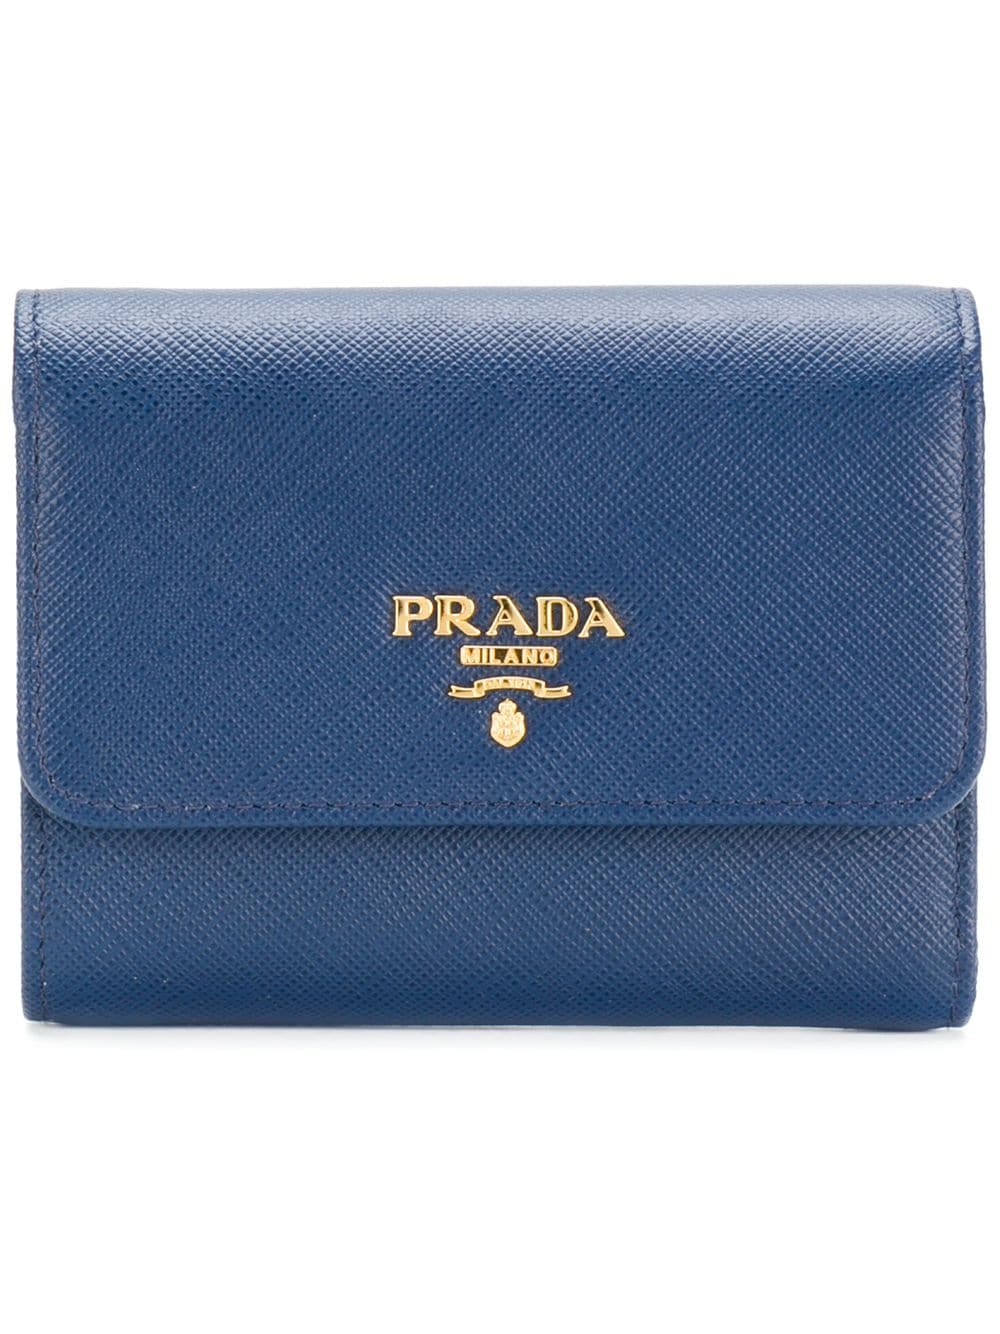 фото Prada кошелек с бляшкой с логотипом